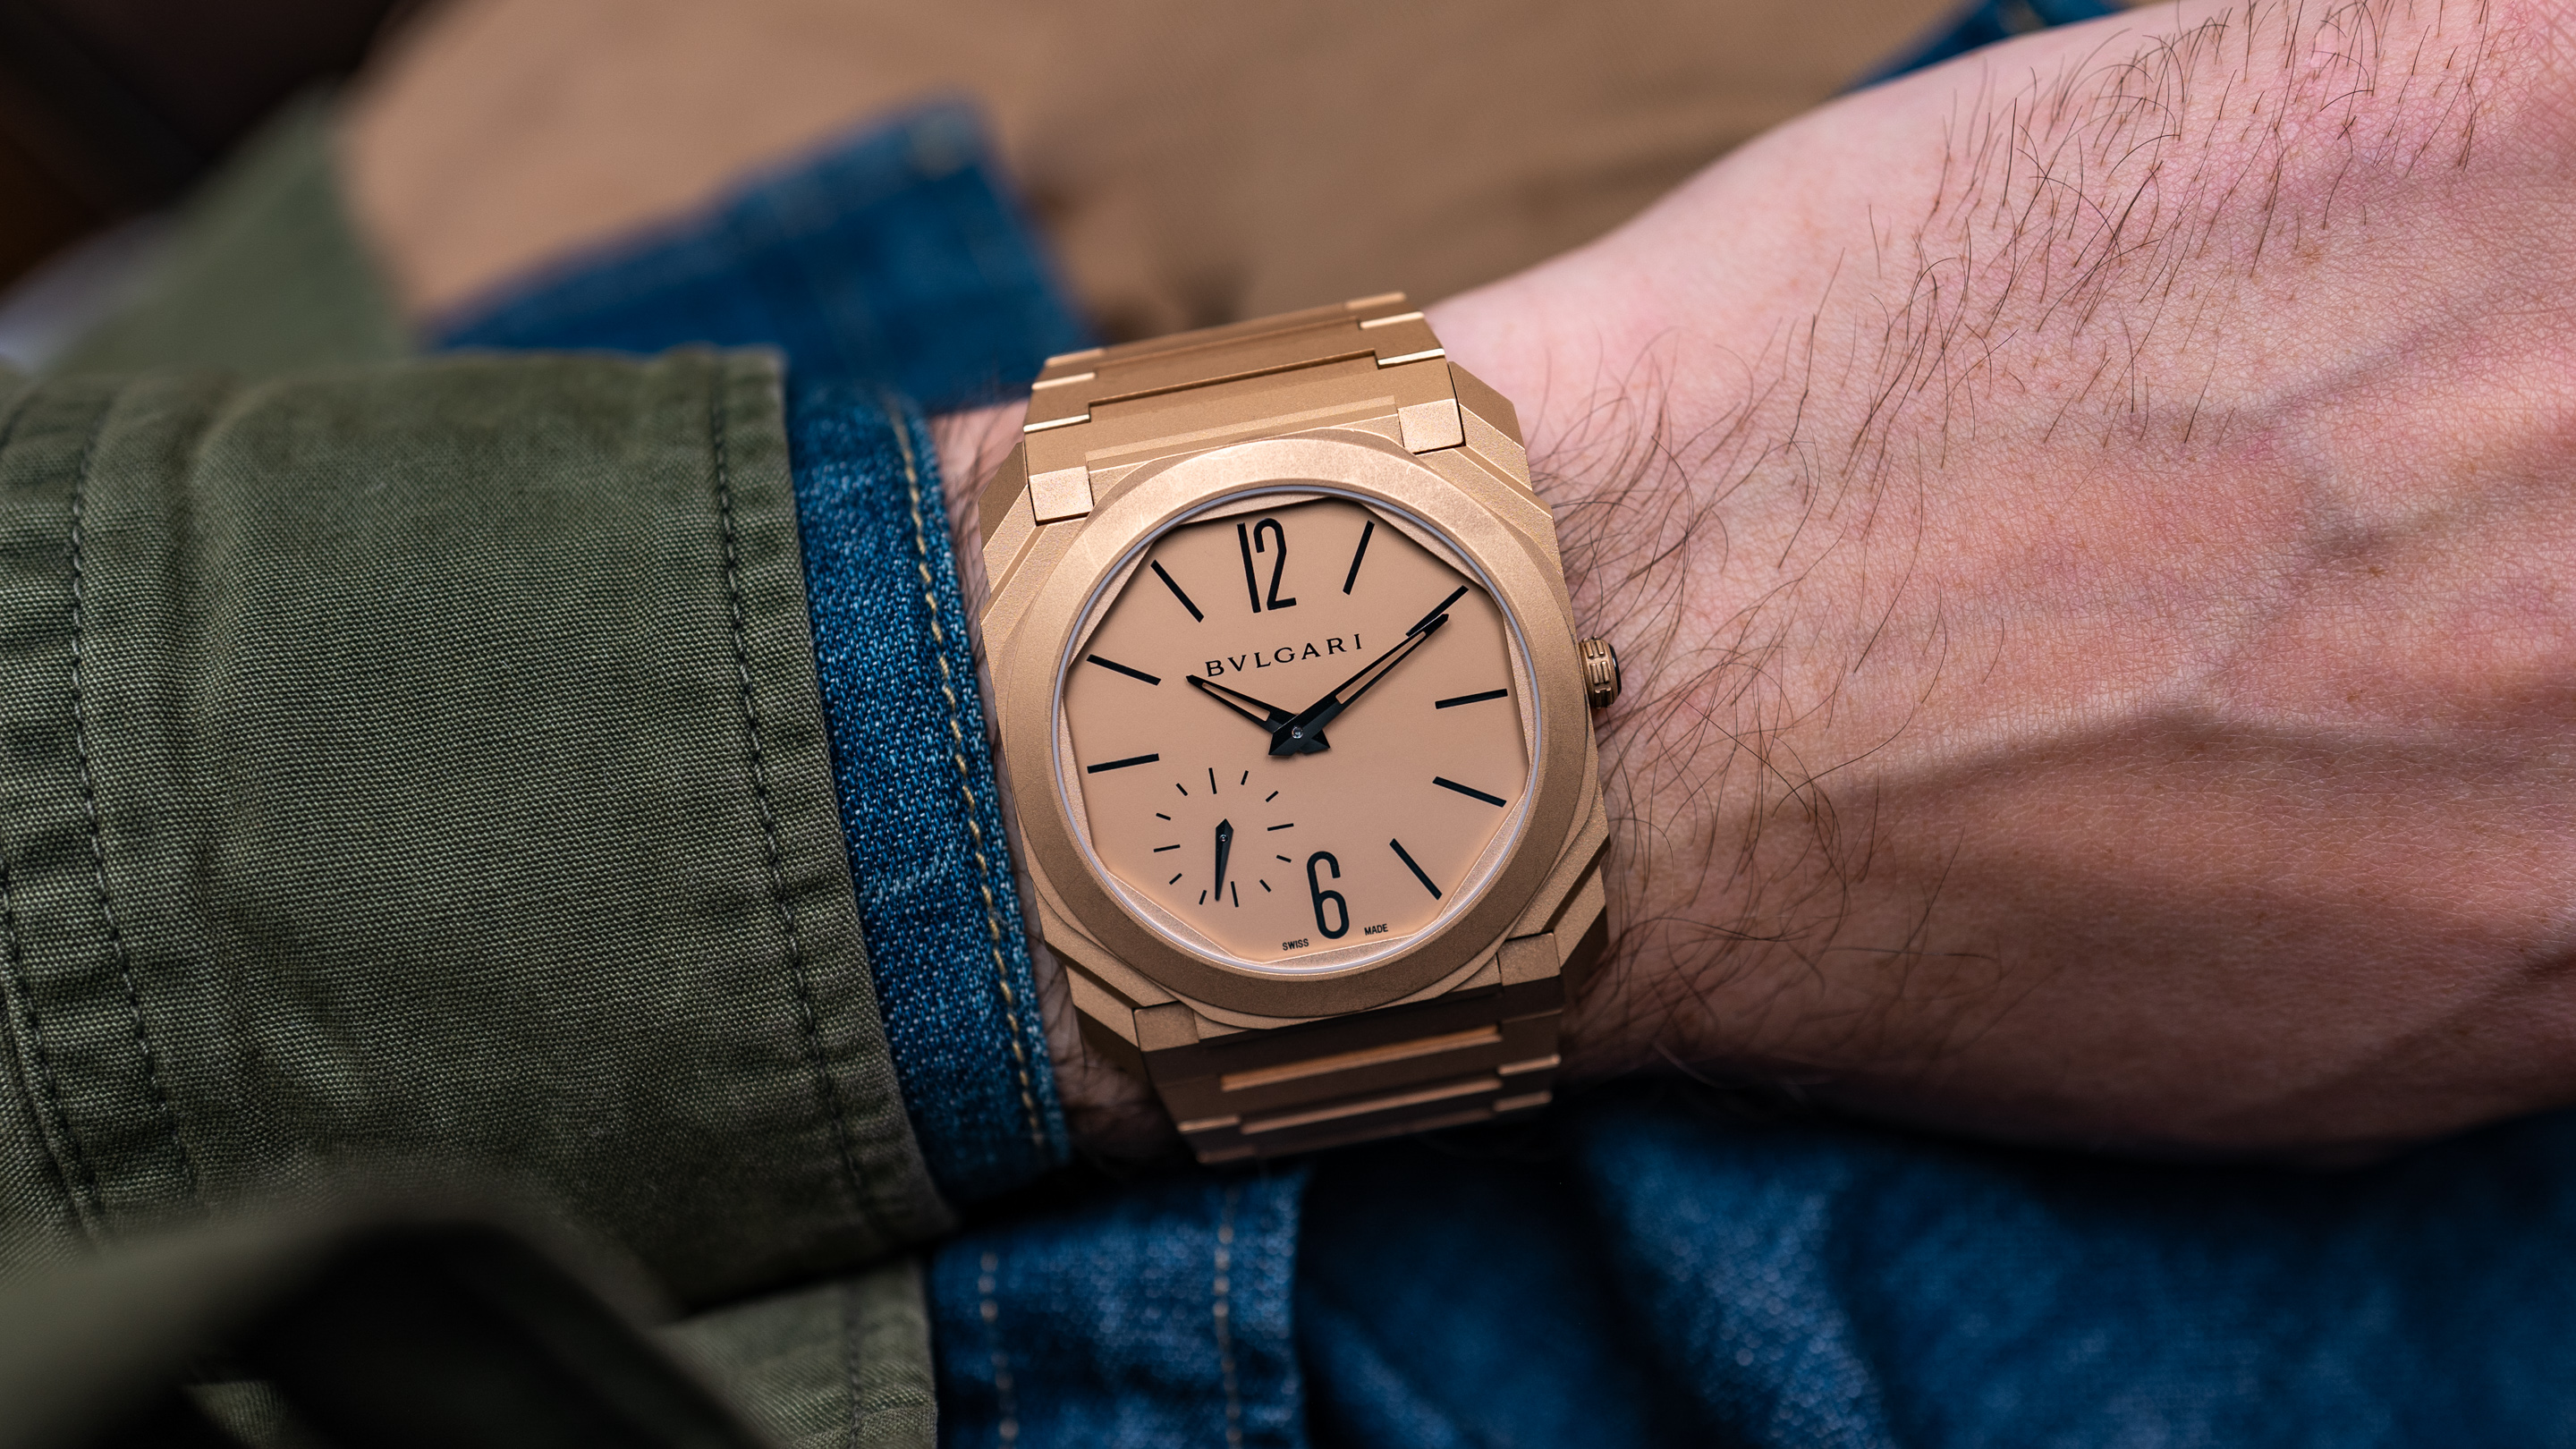 bvlgari wrist watch price